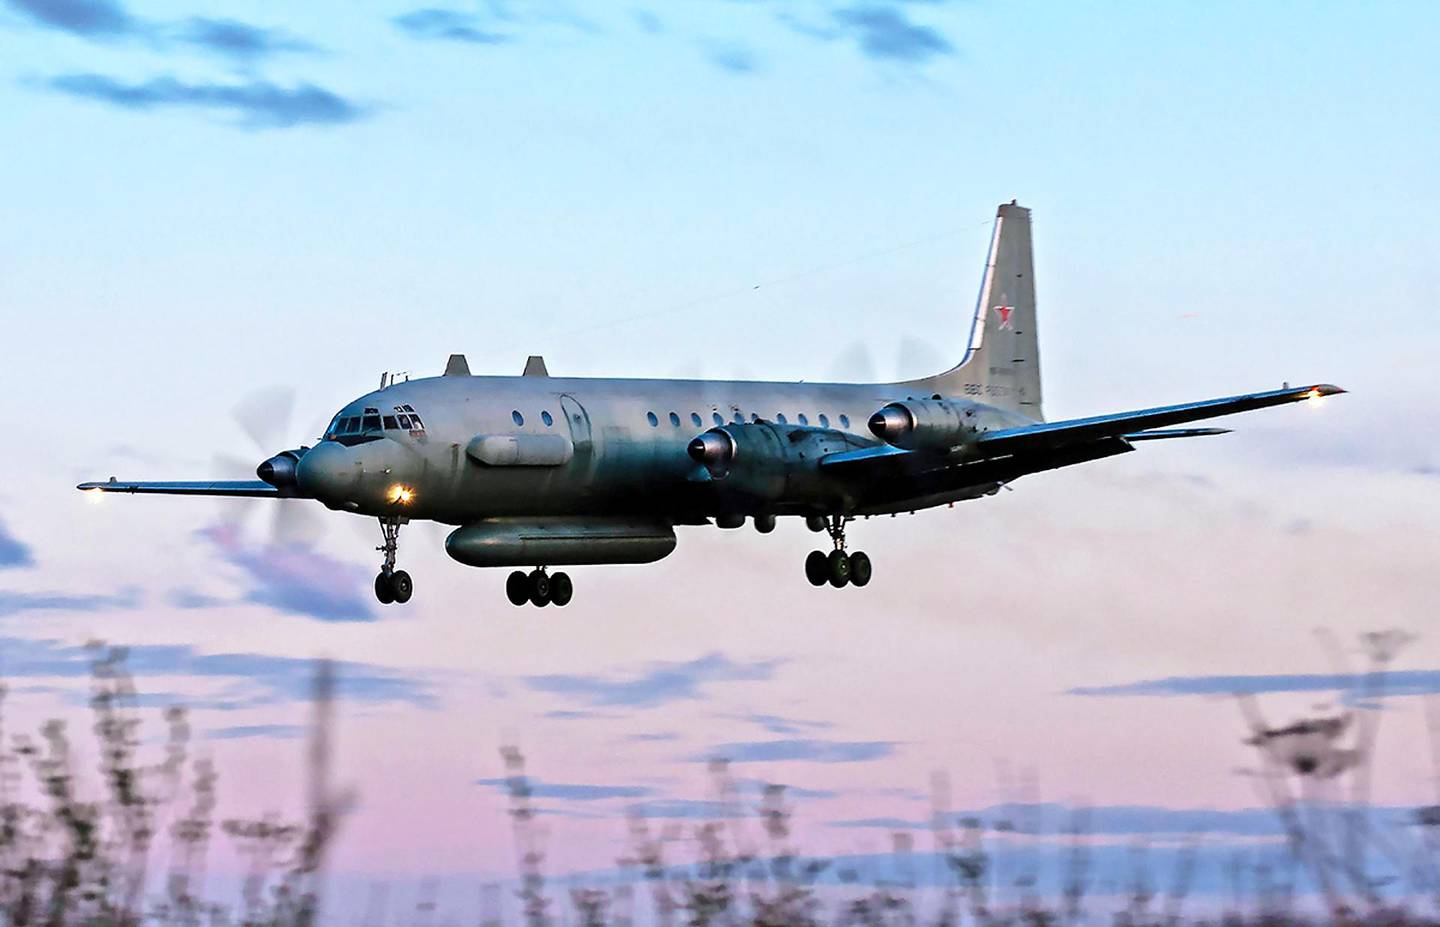 Dette flyet: Det var et russisk IL-20M fly med 15 russiske tjenestemenn om bord som ble skutt ned mandag. FOTO: NTB SCANPIX